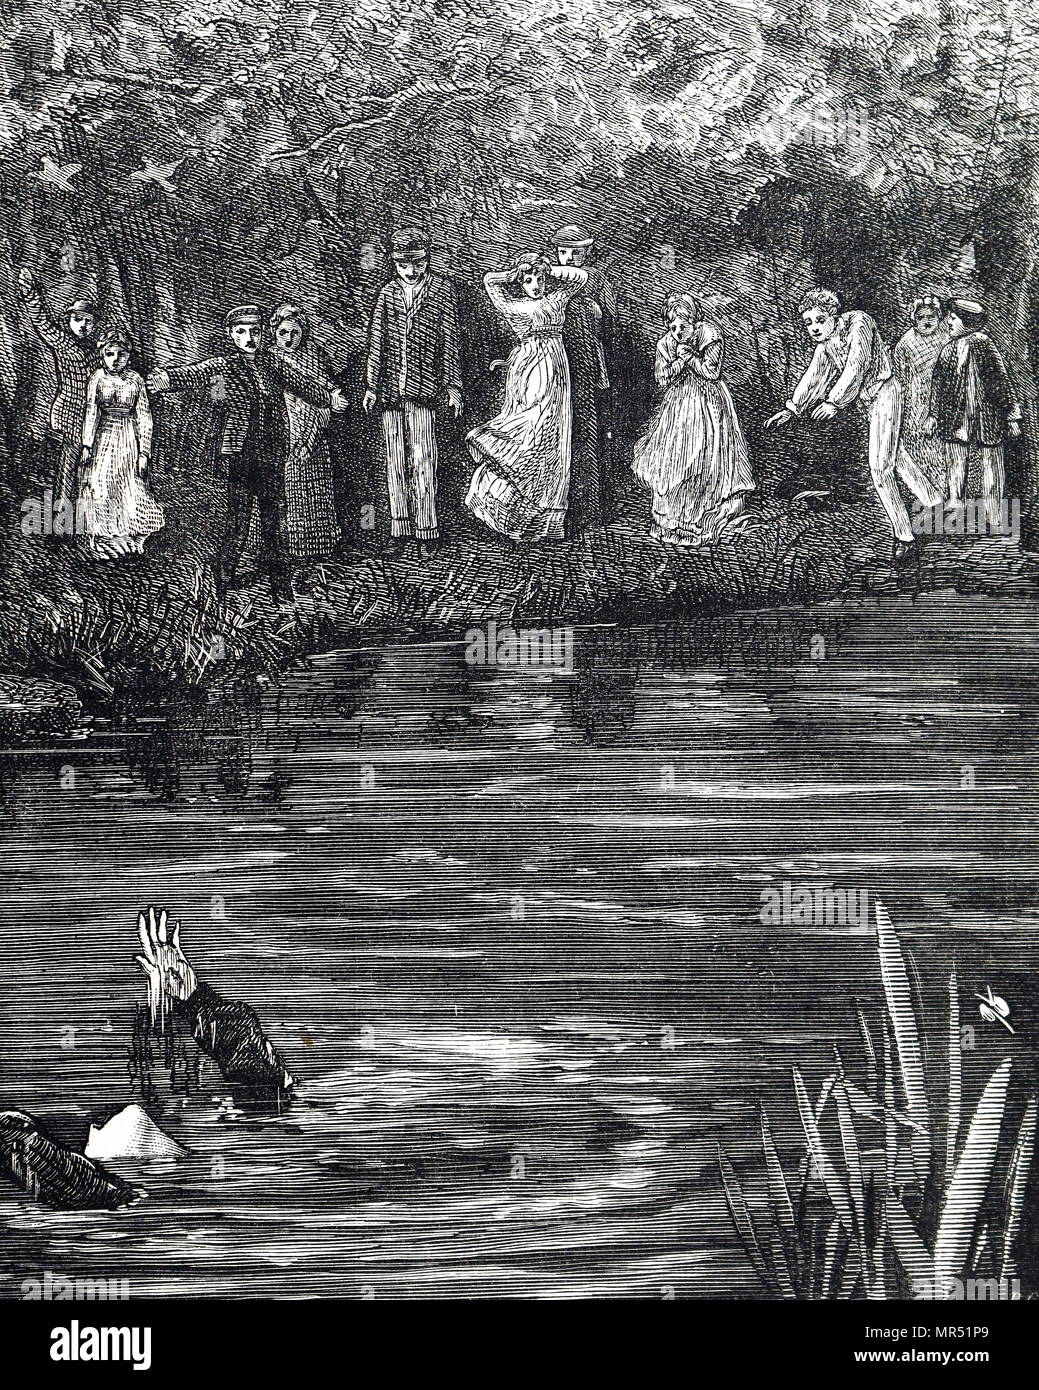 Illustrazione raffigurante una giovane donna annegamento, come le persone guardano con orrore e shock. Illustrato da Francesco Wilfred Lawson (1842-1935) un artista britannico. Datata del XIX secolo Foto Stock